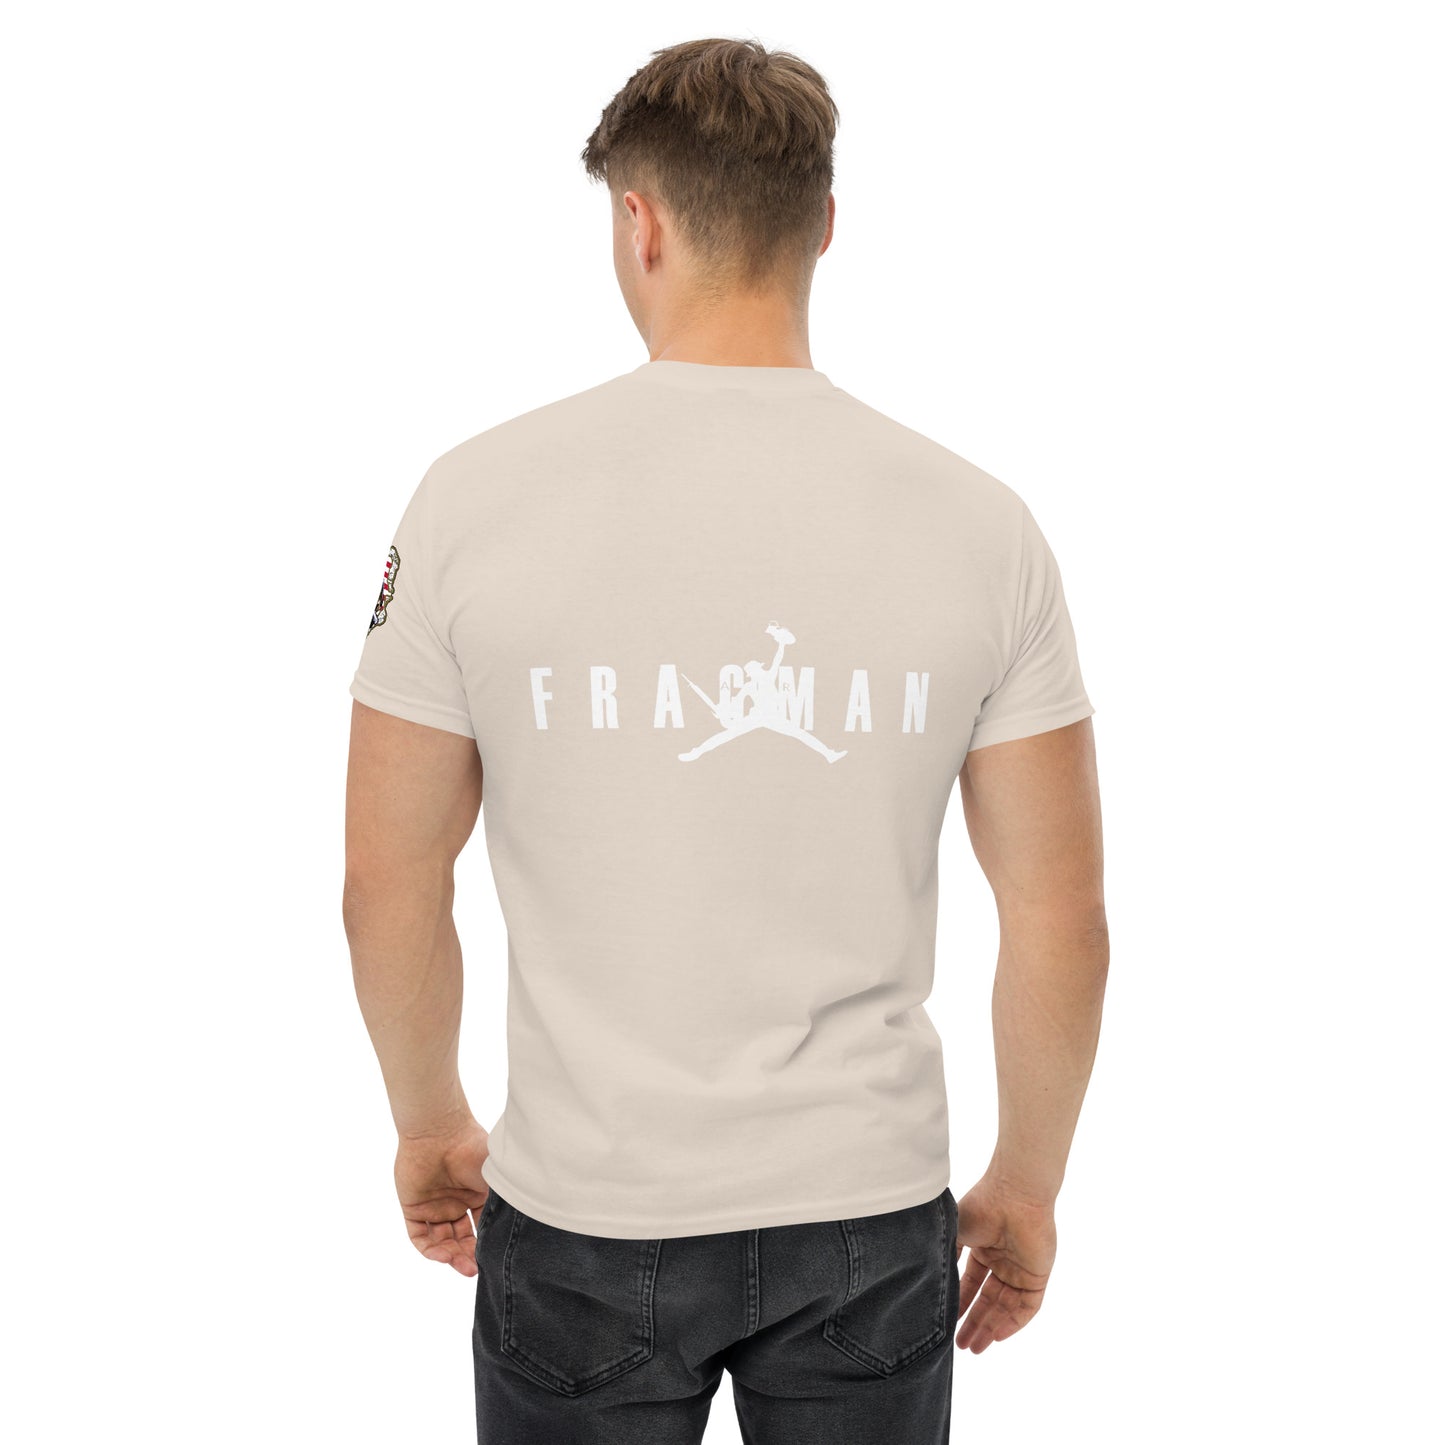 Air Fragman- White